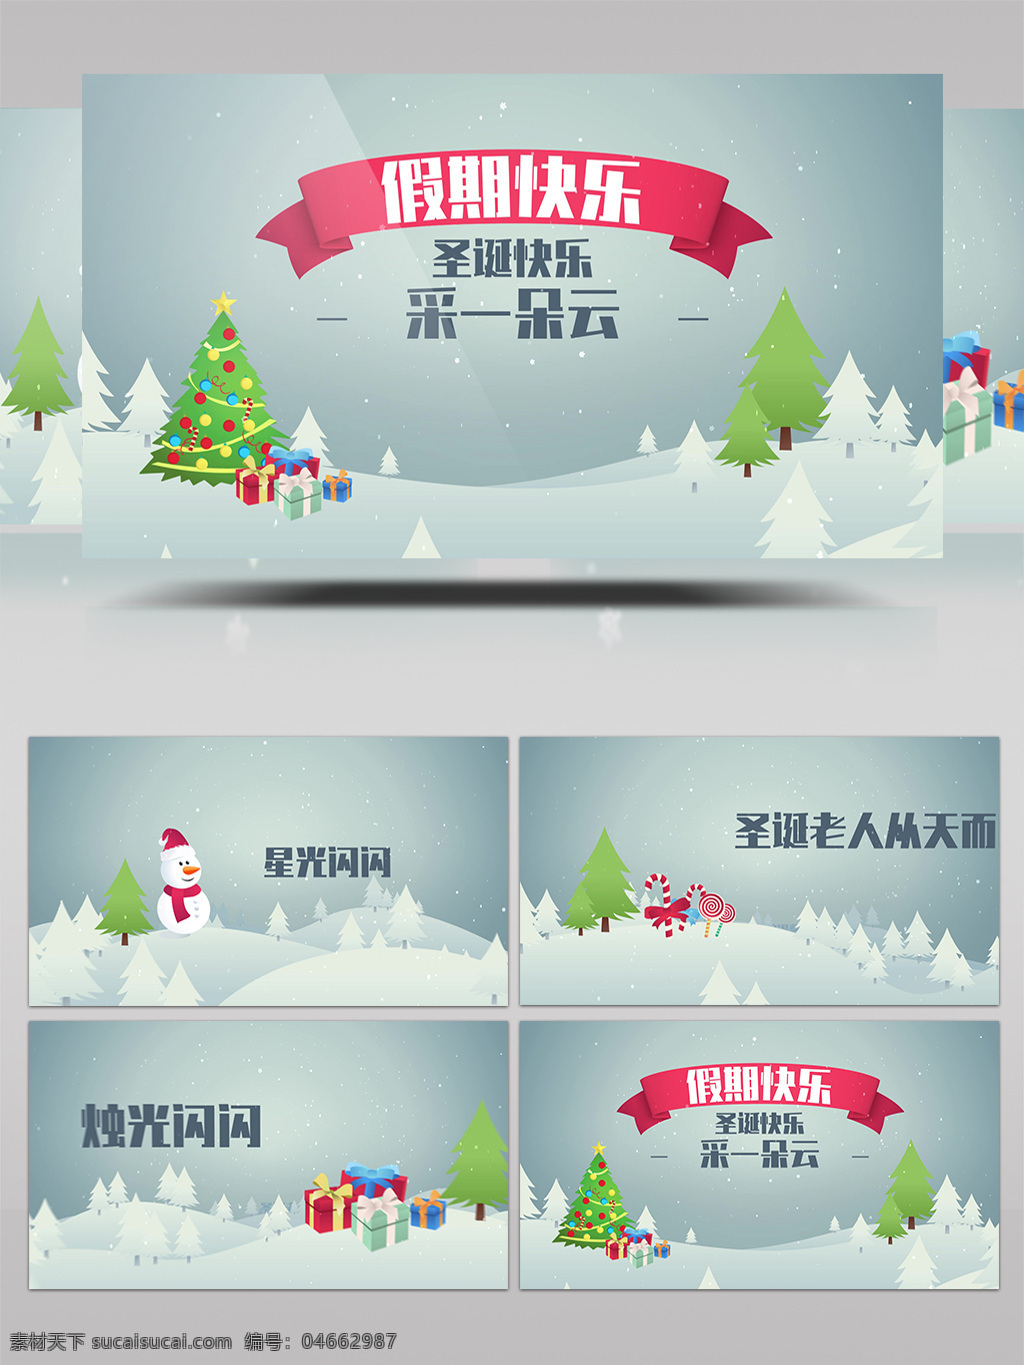 圣诞节 mg 动画 简约 节日 开场 片头 相册 包装 雪景 雪花 片尾 周年 日 纪念 展示 冰雪 麋鹿 圣诞老人